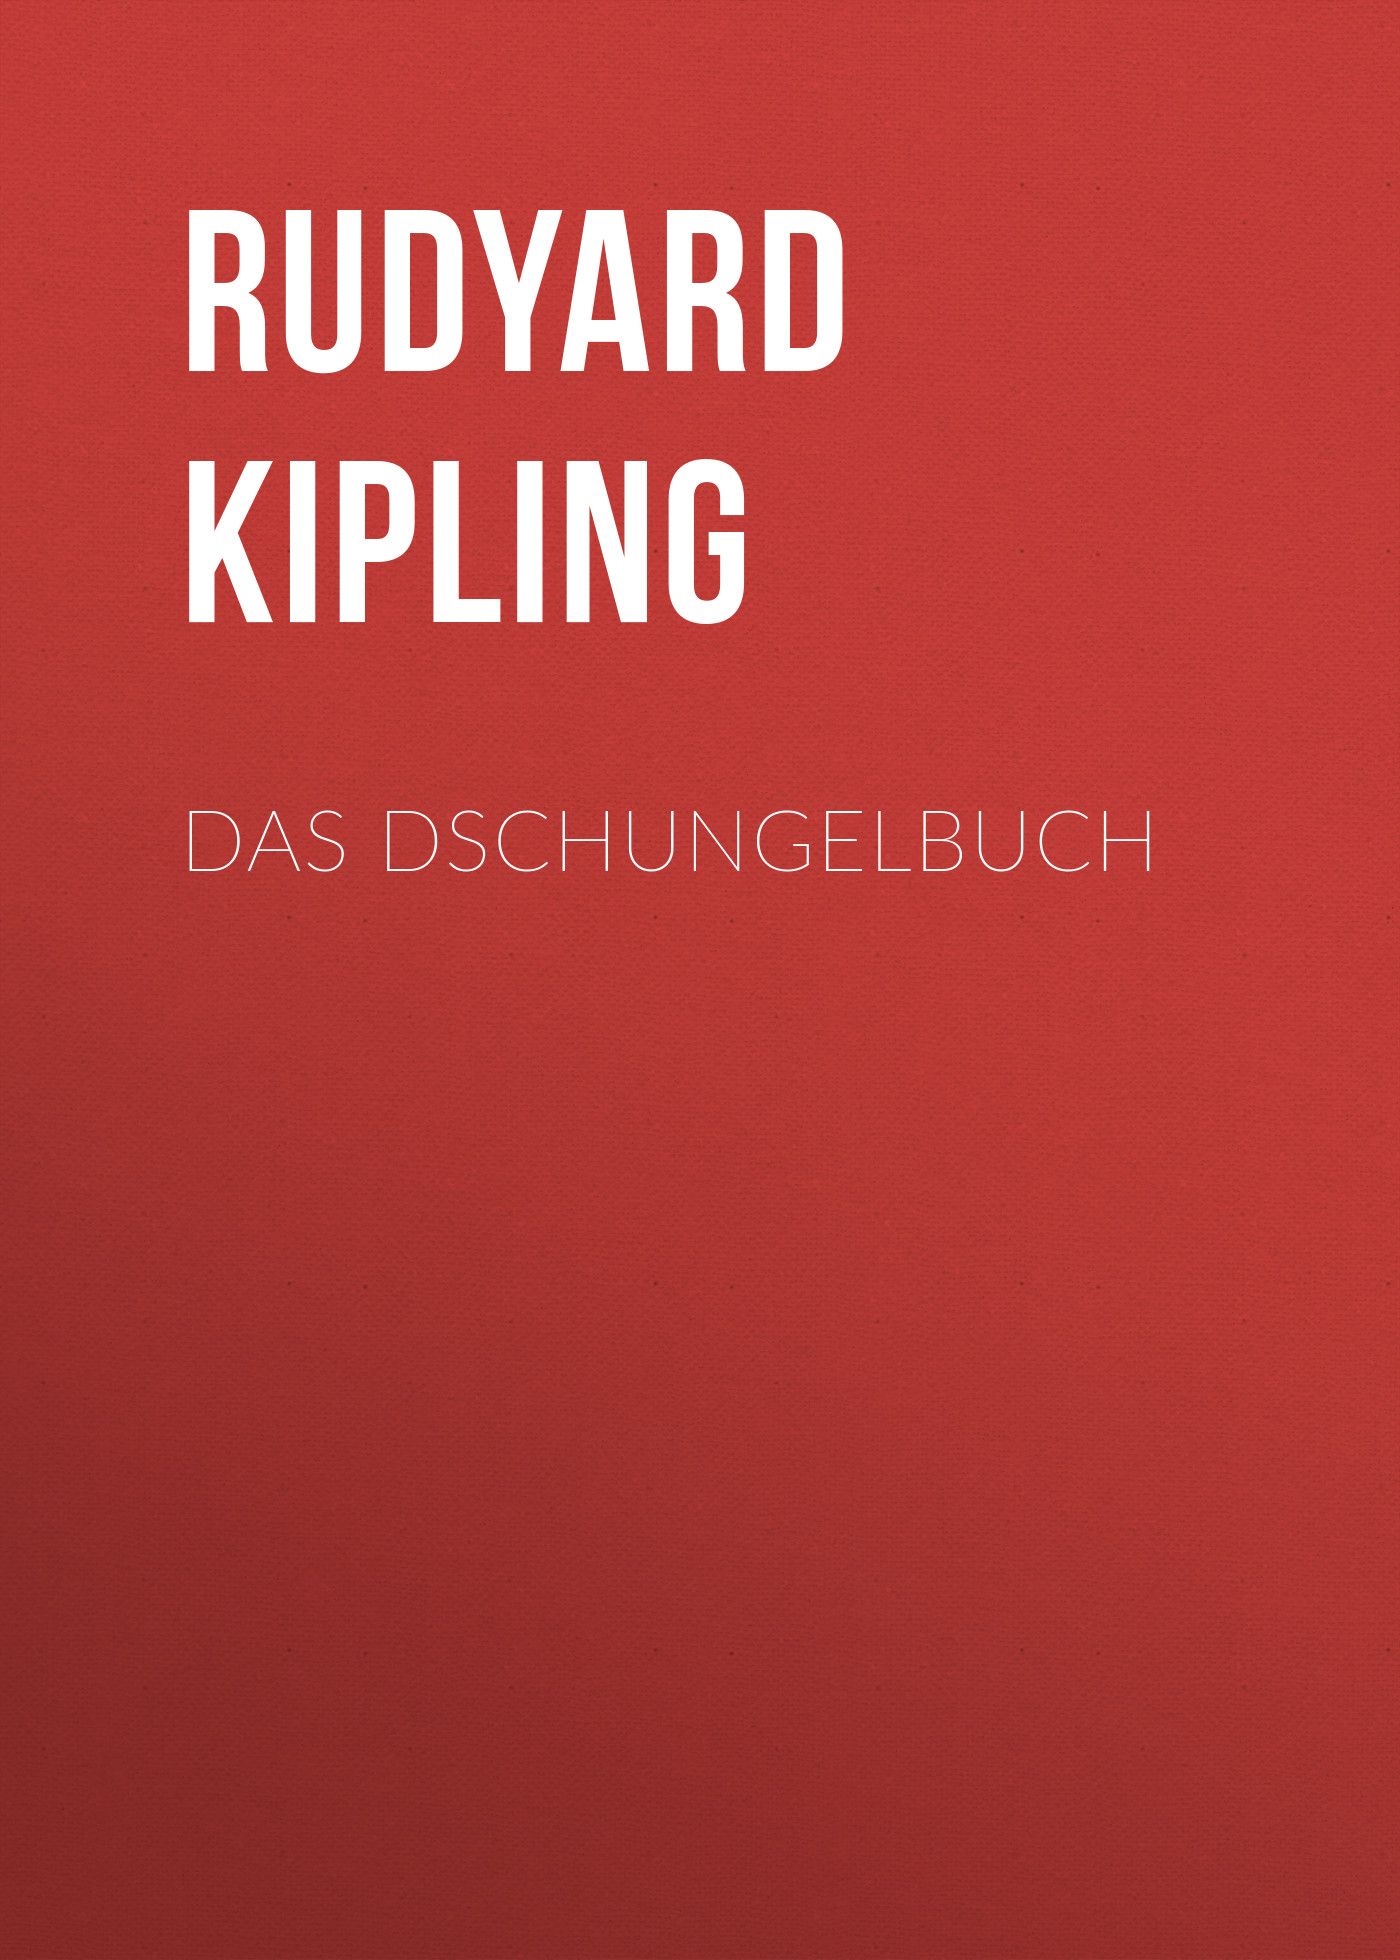 Книга Das Dschungelbuch из серии , созданная Rudyard Kipling, может относится к жанру Зарубежная классика. Стоимость электронной книги Das Dschungelbuch с идентификатором 48631852 составляет 0 руб.